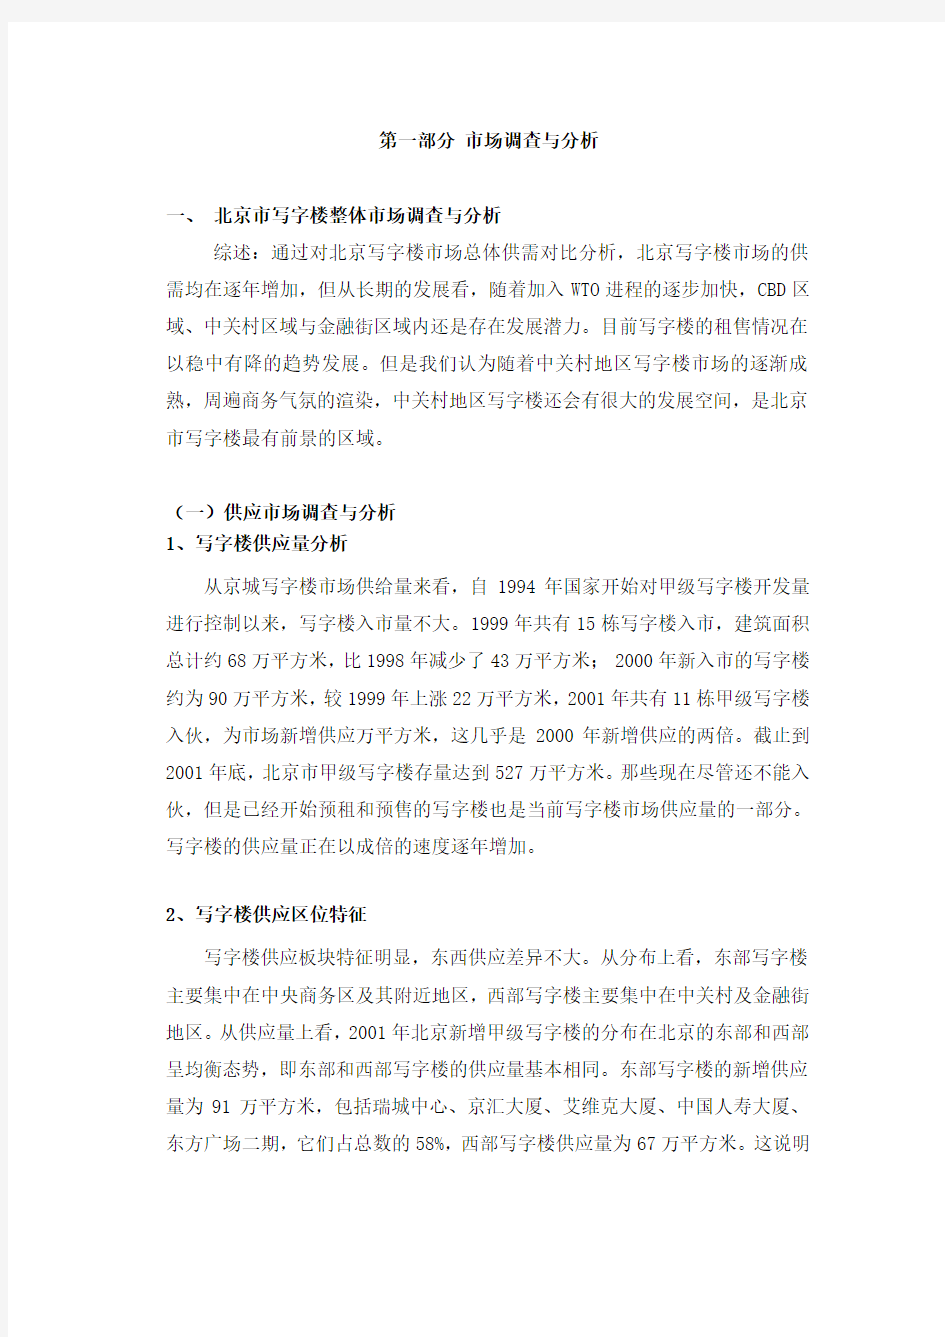 北京市写字楼整体市场调查与分析